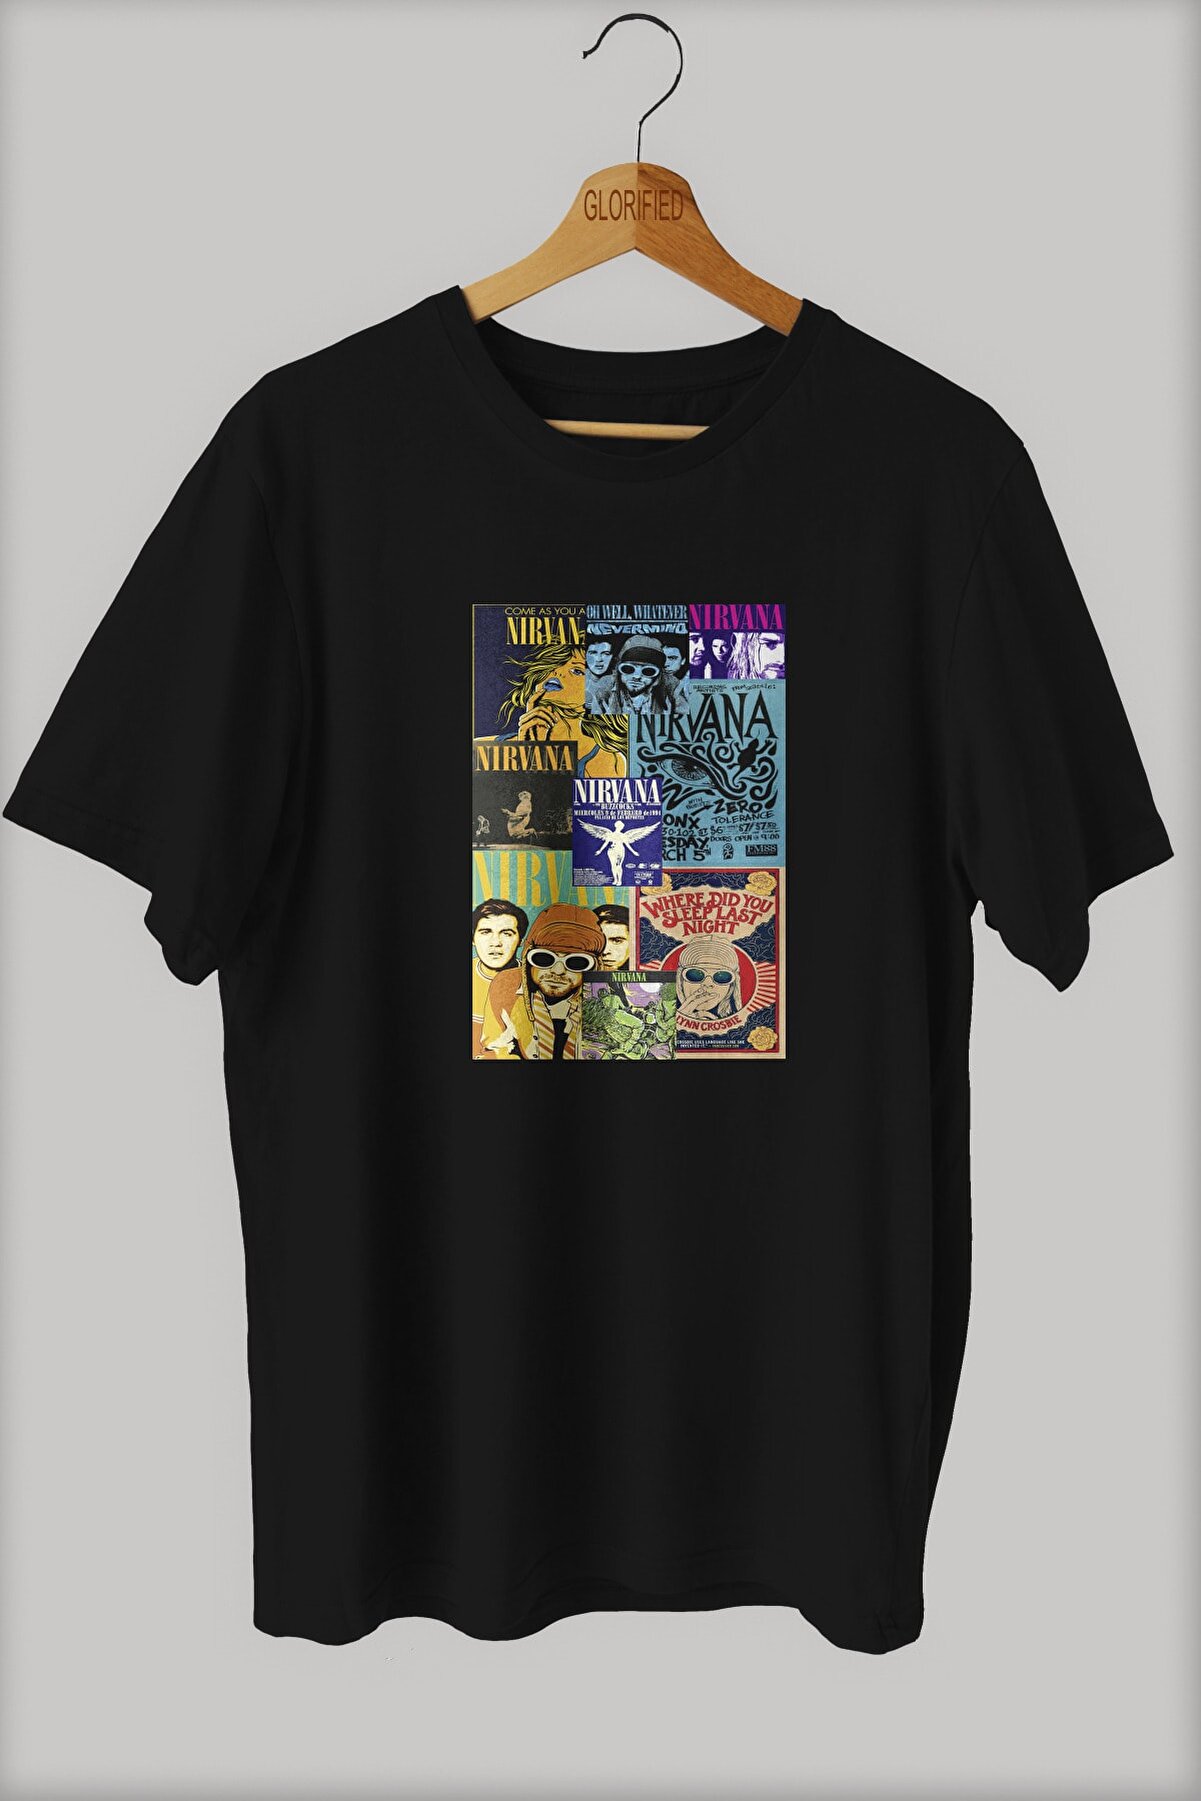 Glorified Nirvana Tasarım Baskılı Oversize T-shirt ( Tişört ) %100 Cotton